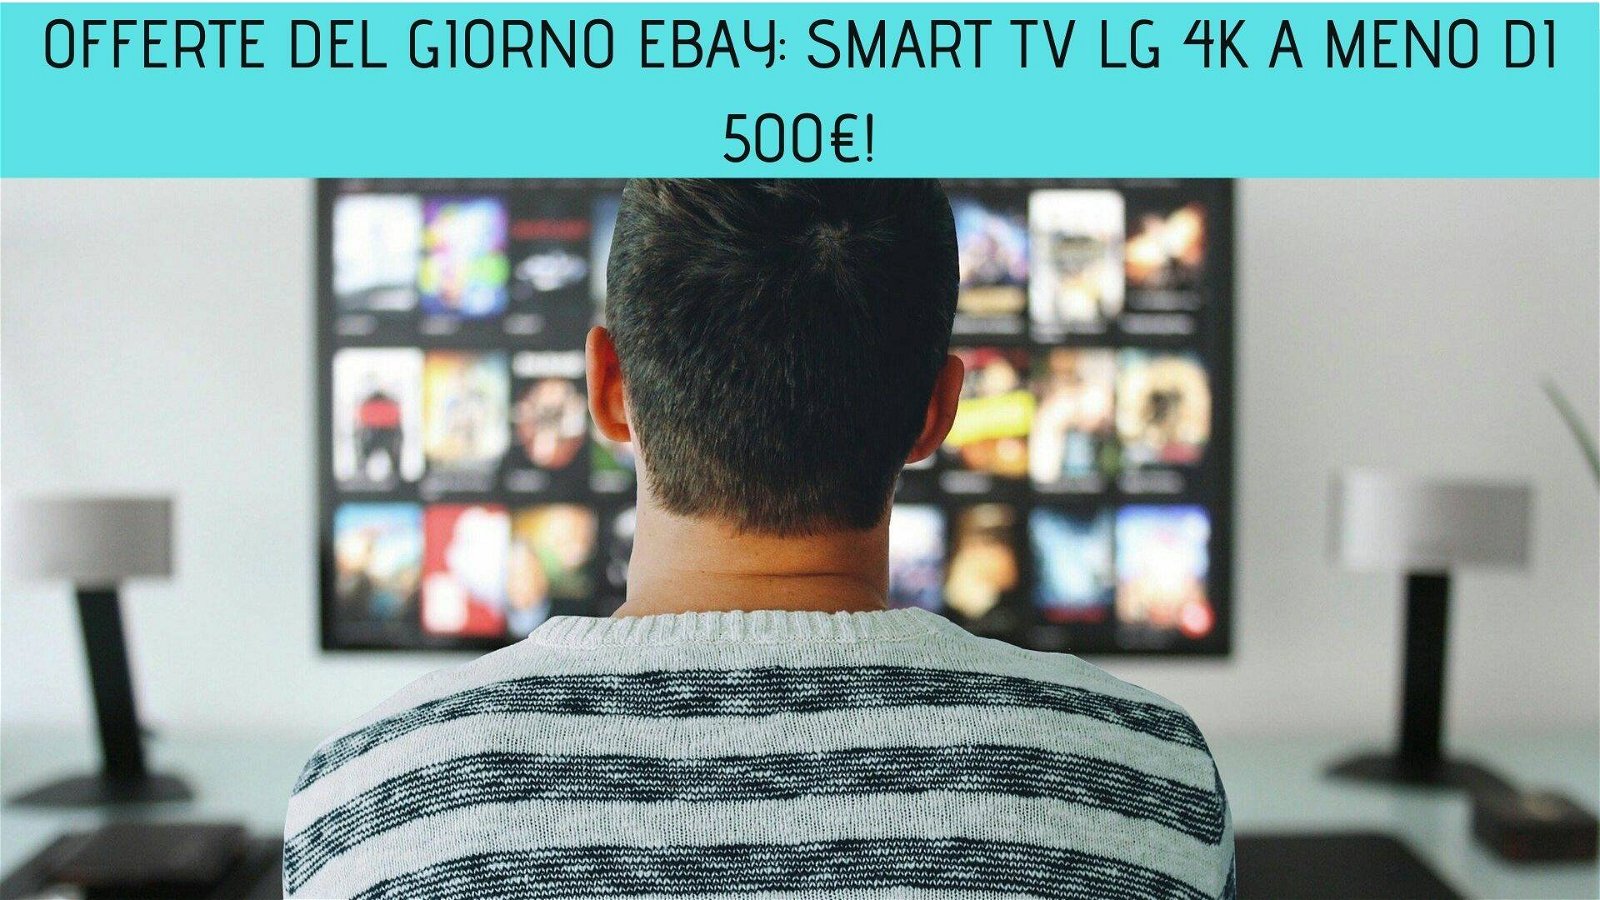 Immagine di Offerte del giorno eBay: Smart TV LG 4K a meno di 500€!